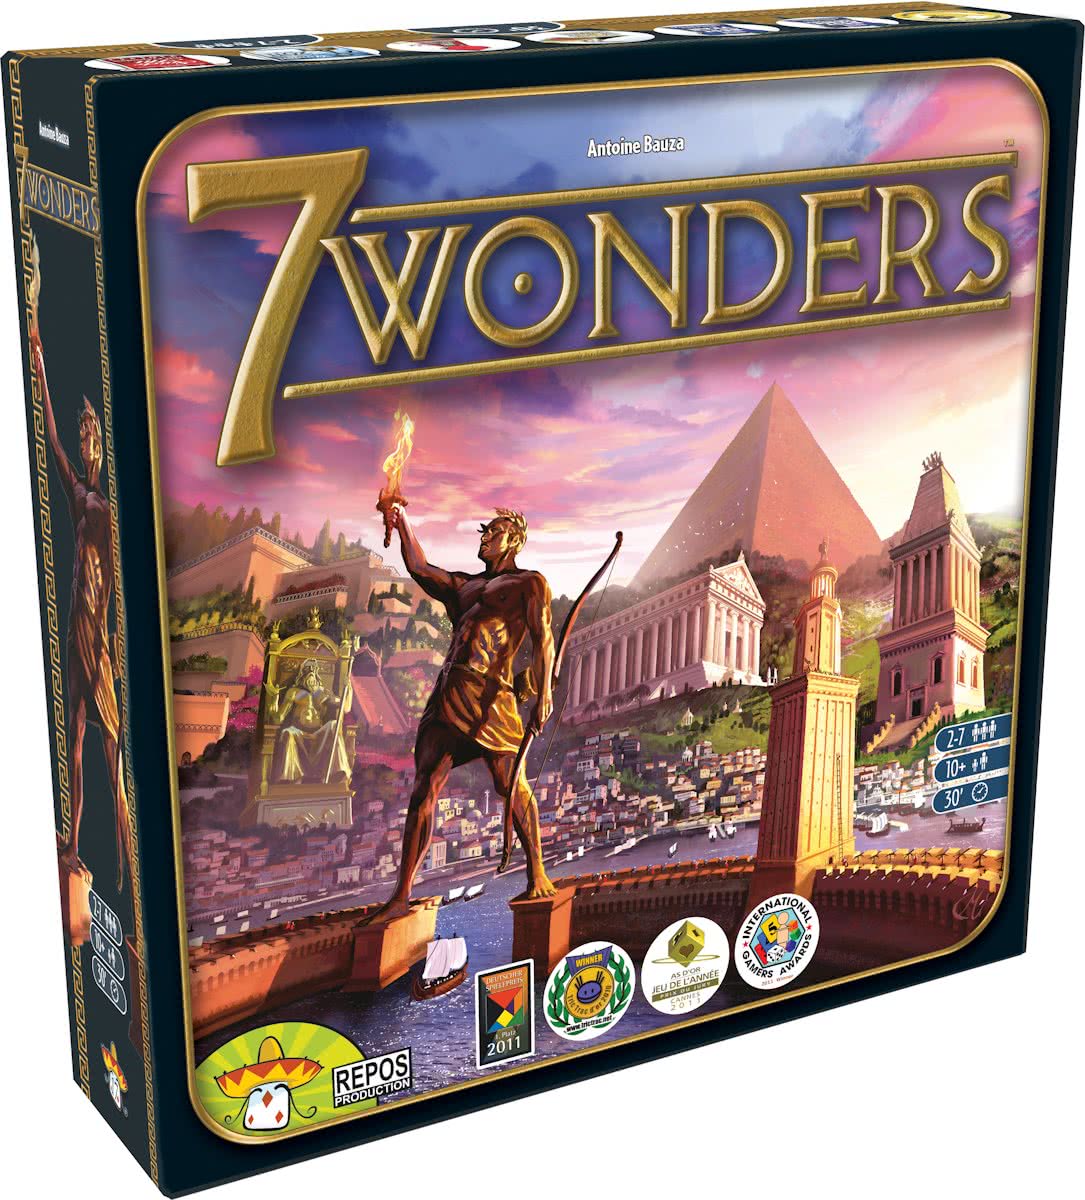 7 Wonders description reviews